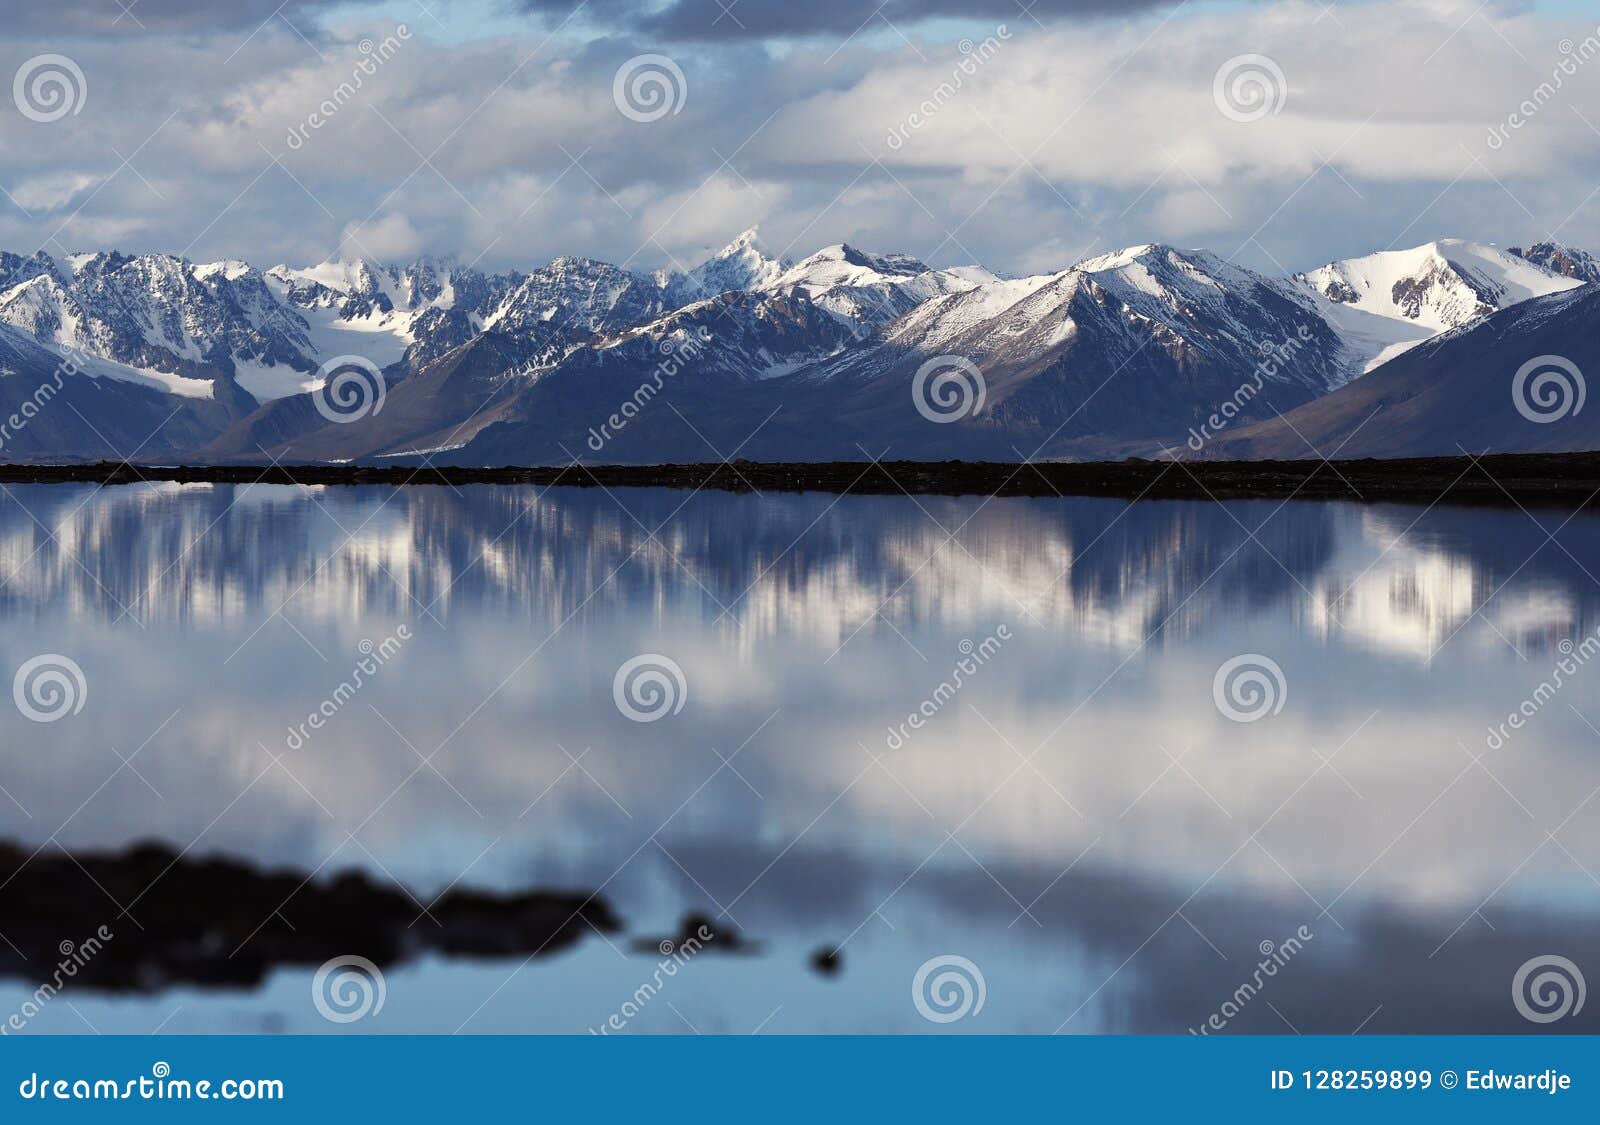 landscapes of svalbard / spitsbergen